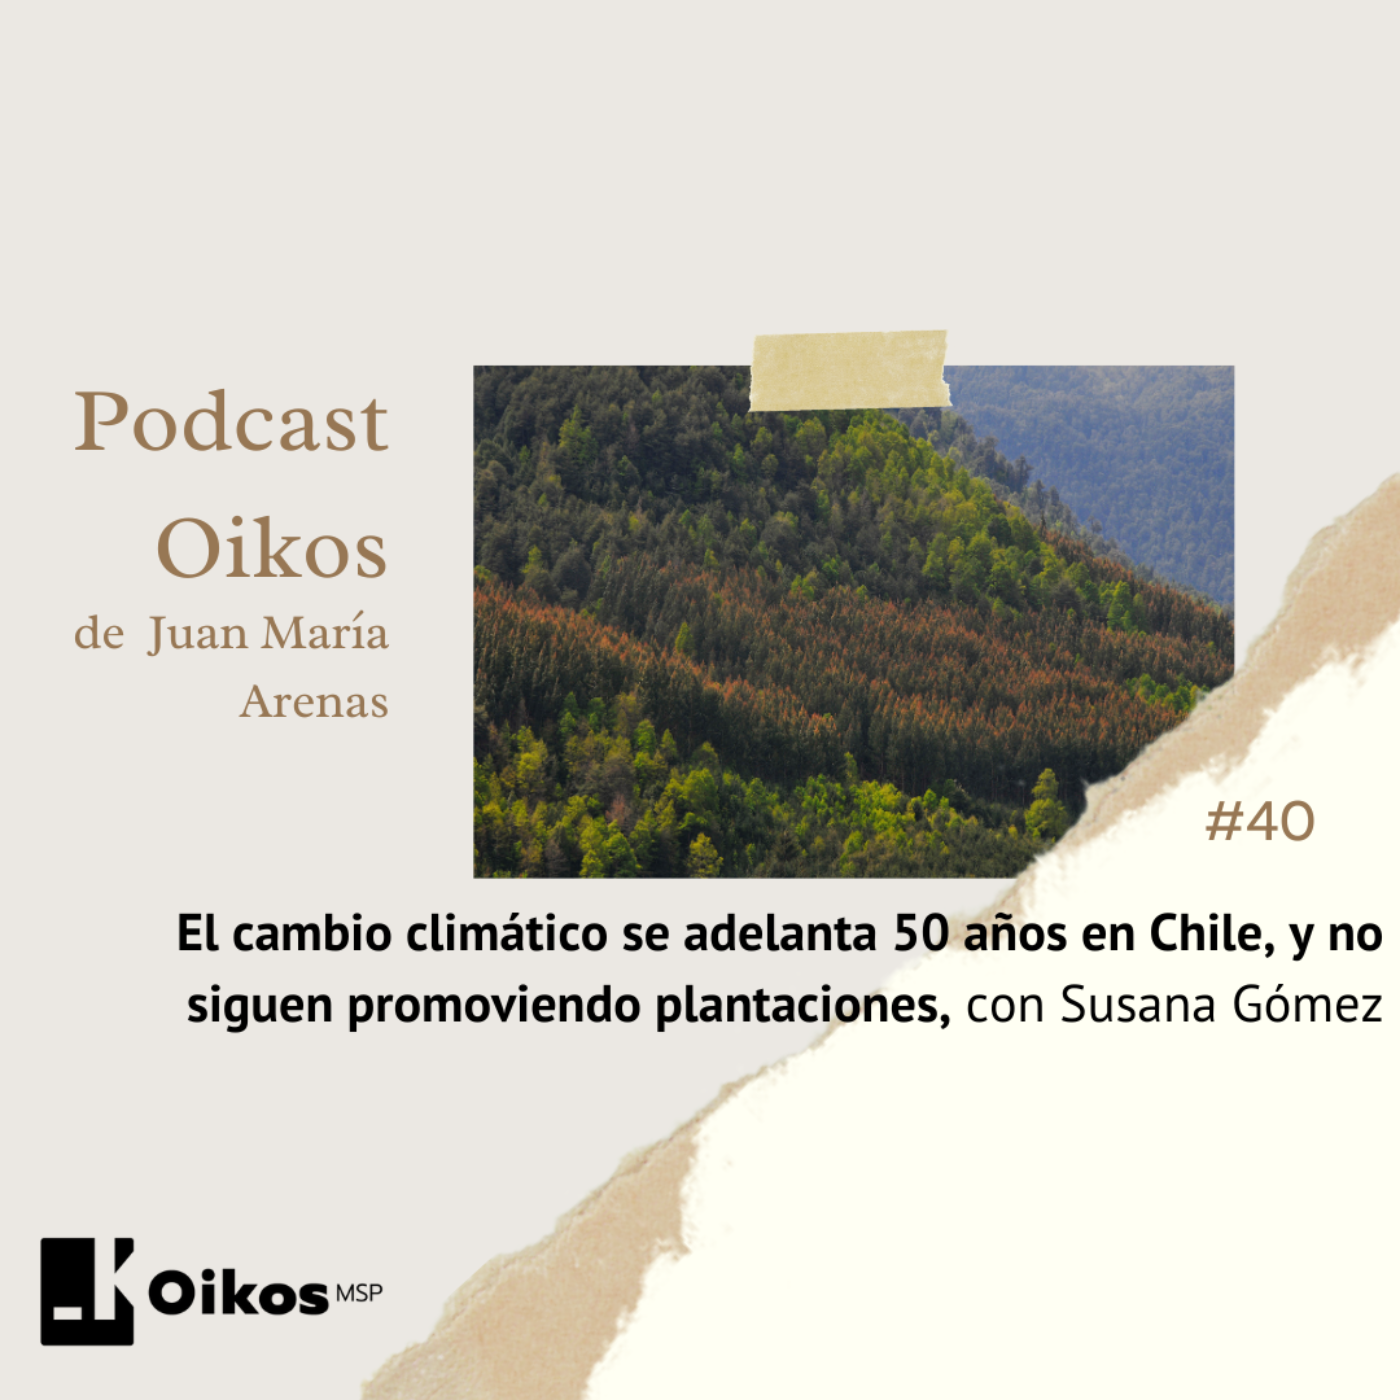 El cambio climático se adelanta 50 años en Chile, y no siguen promoviendo plantaciones, con Susana Gómez